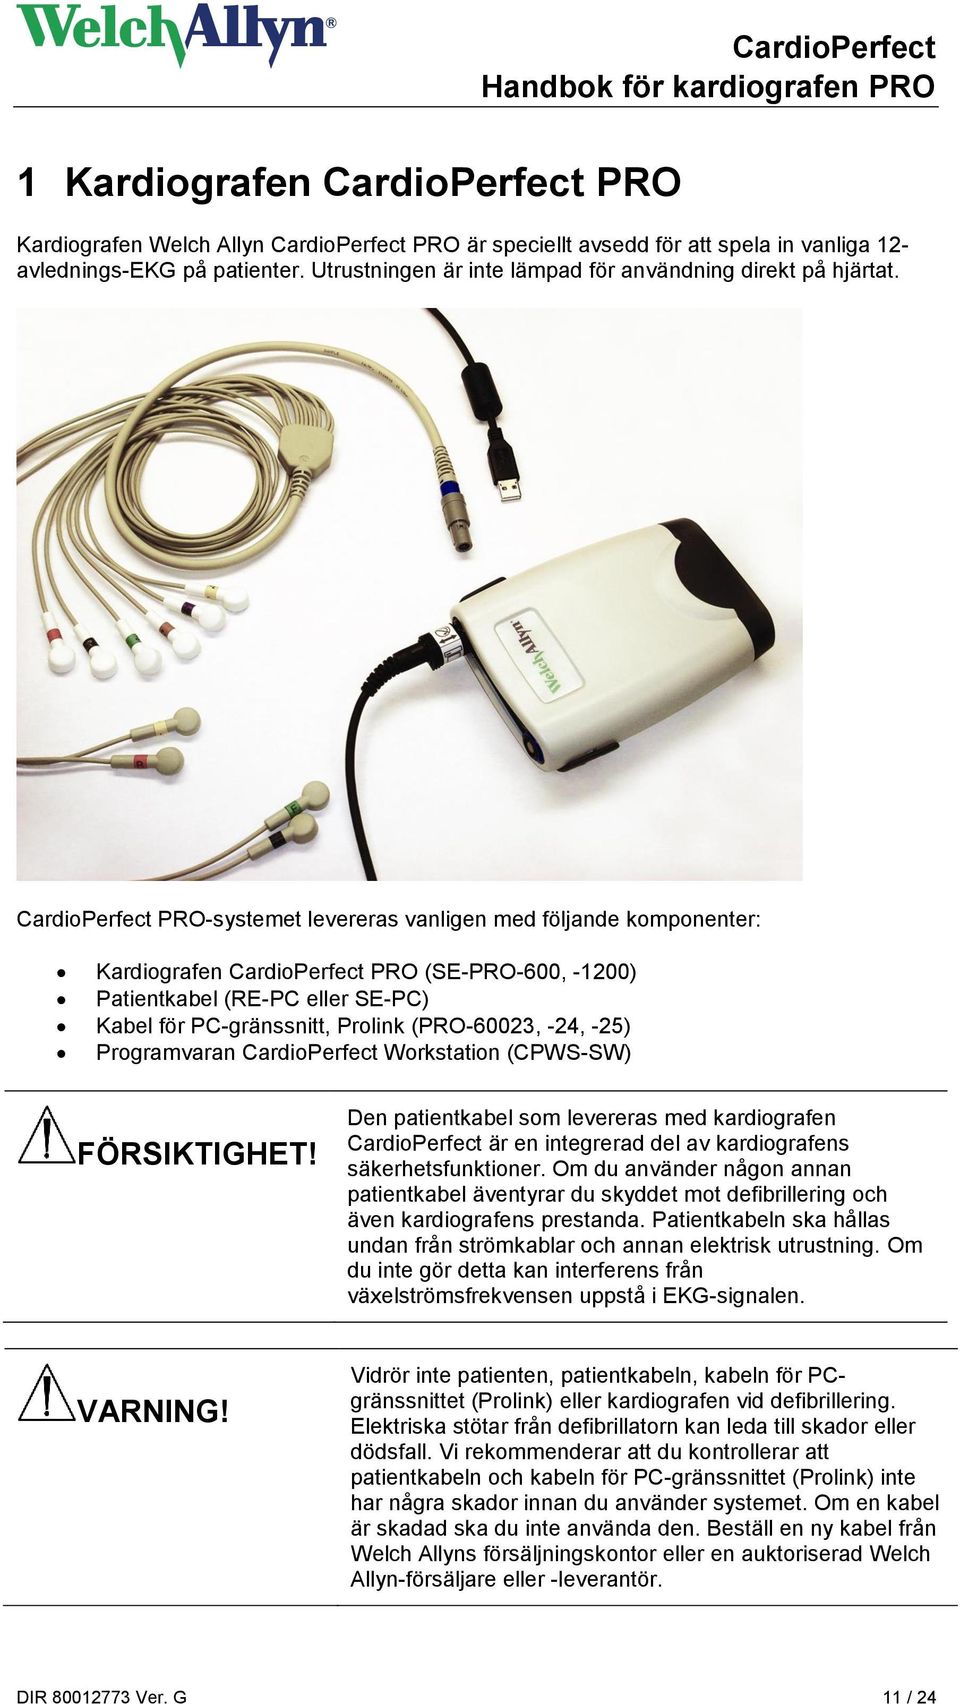 CardioPerfect PRO-systemet levereras vanligen med följande komponenter: Kardiografen CardioPerfect PRO (SE-PRO-600, -1200) Patientkabel (RE-PC eller SE-PC) Kabel för PC-gränssnitt, Prolink